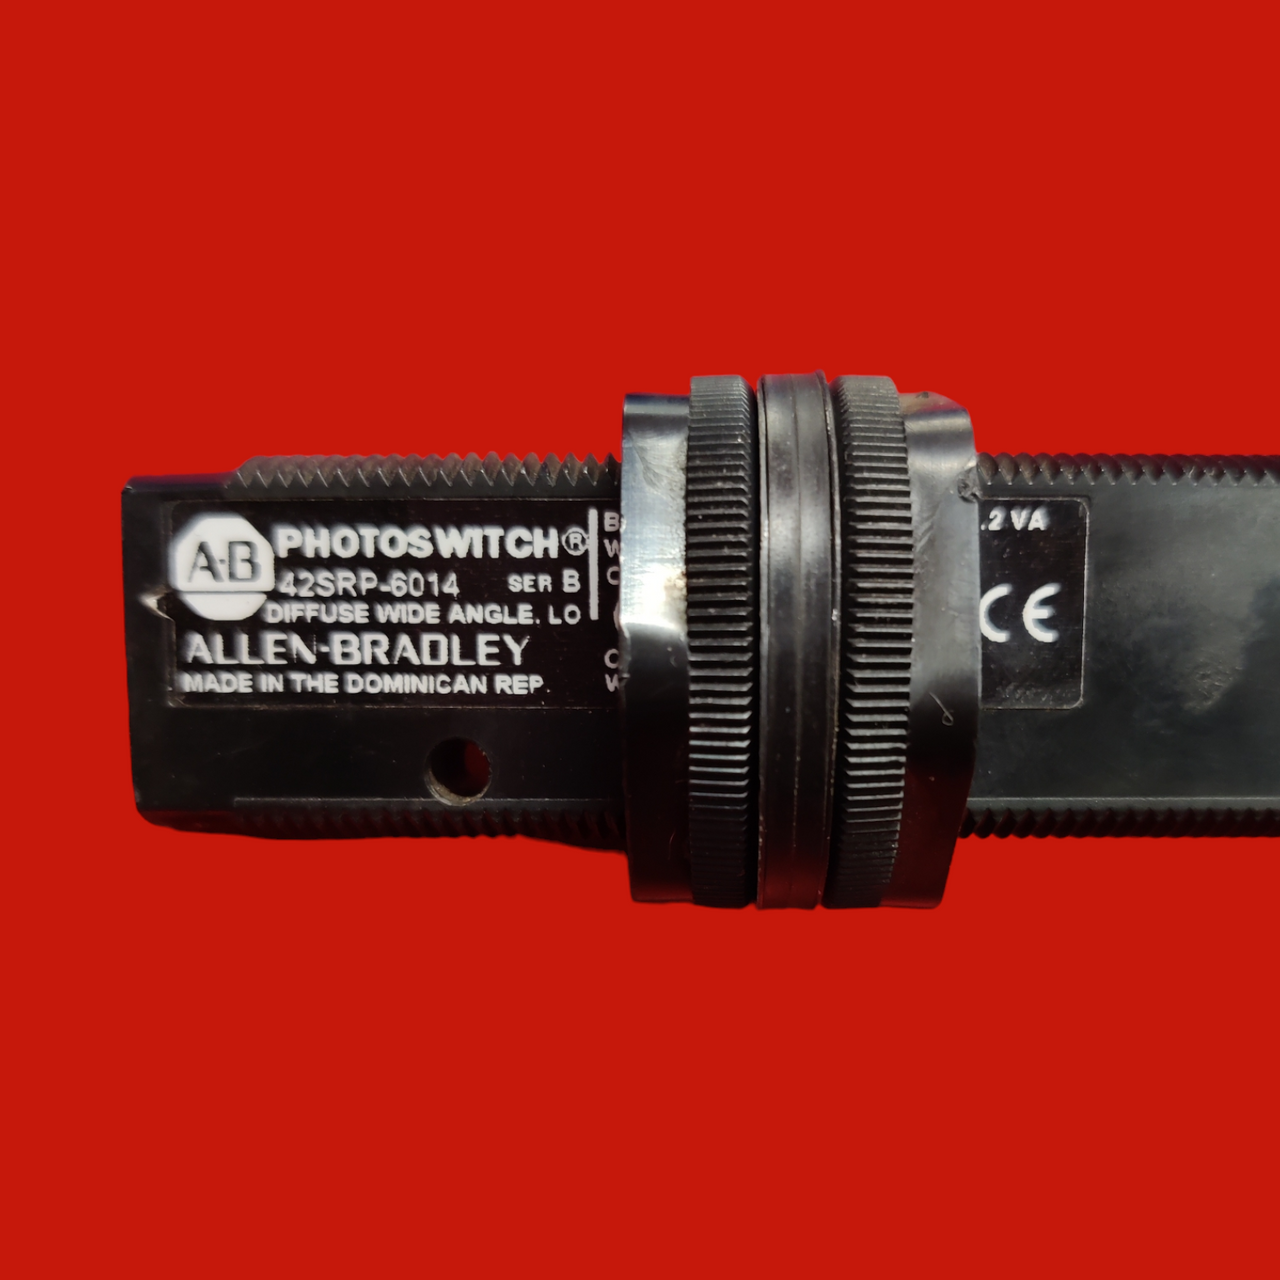 Allen Bradley Compact Photo Sensor, 42SRP-6014